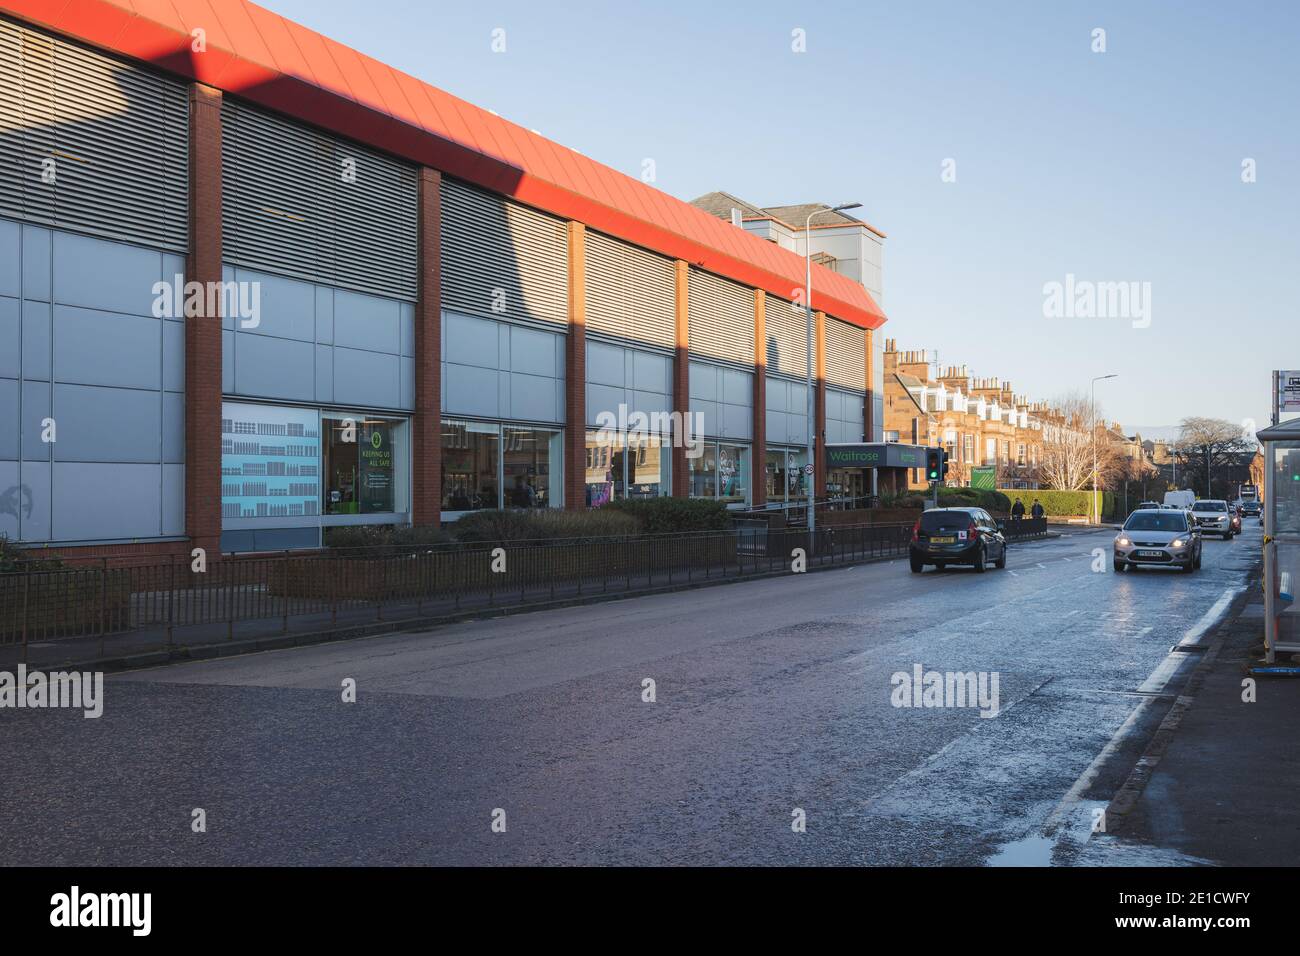 Édimbourg, Écosse - janvier 6 2021 : emplacement de la banque comely Waitrose à Édimbourg. Waitrose est une marque britannique de supermarchés. Banque D'Images